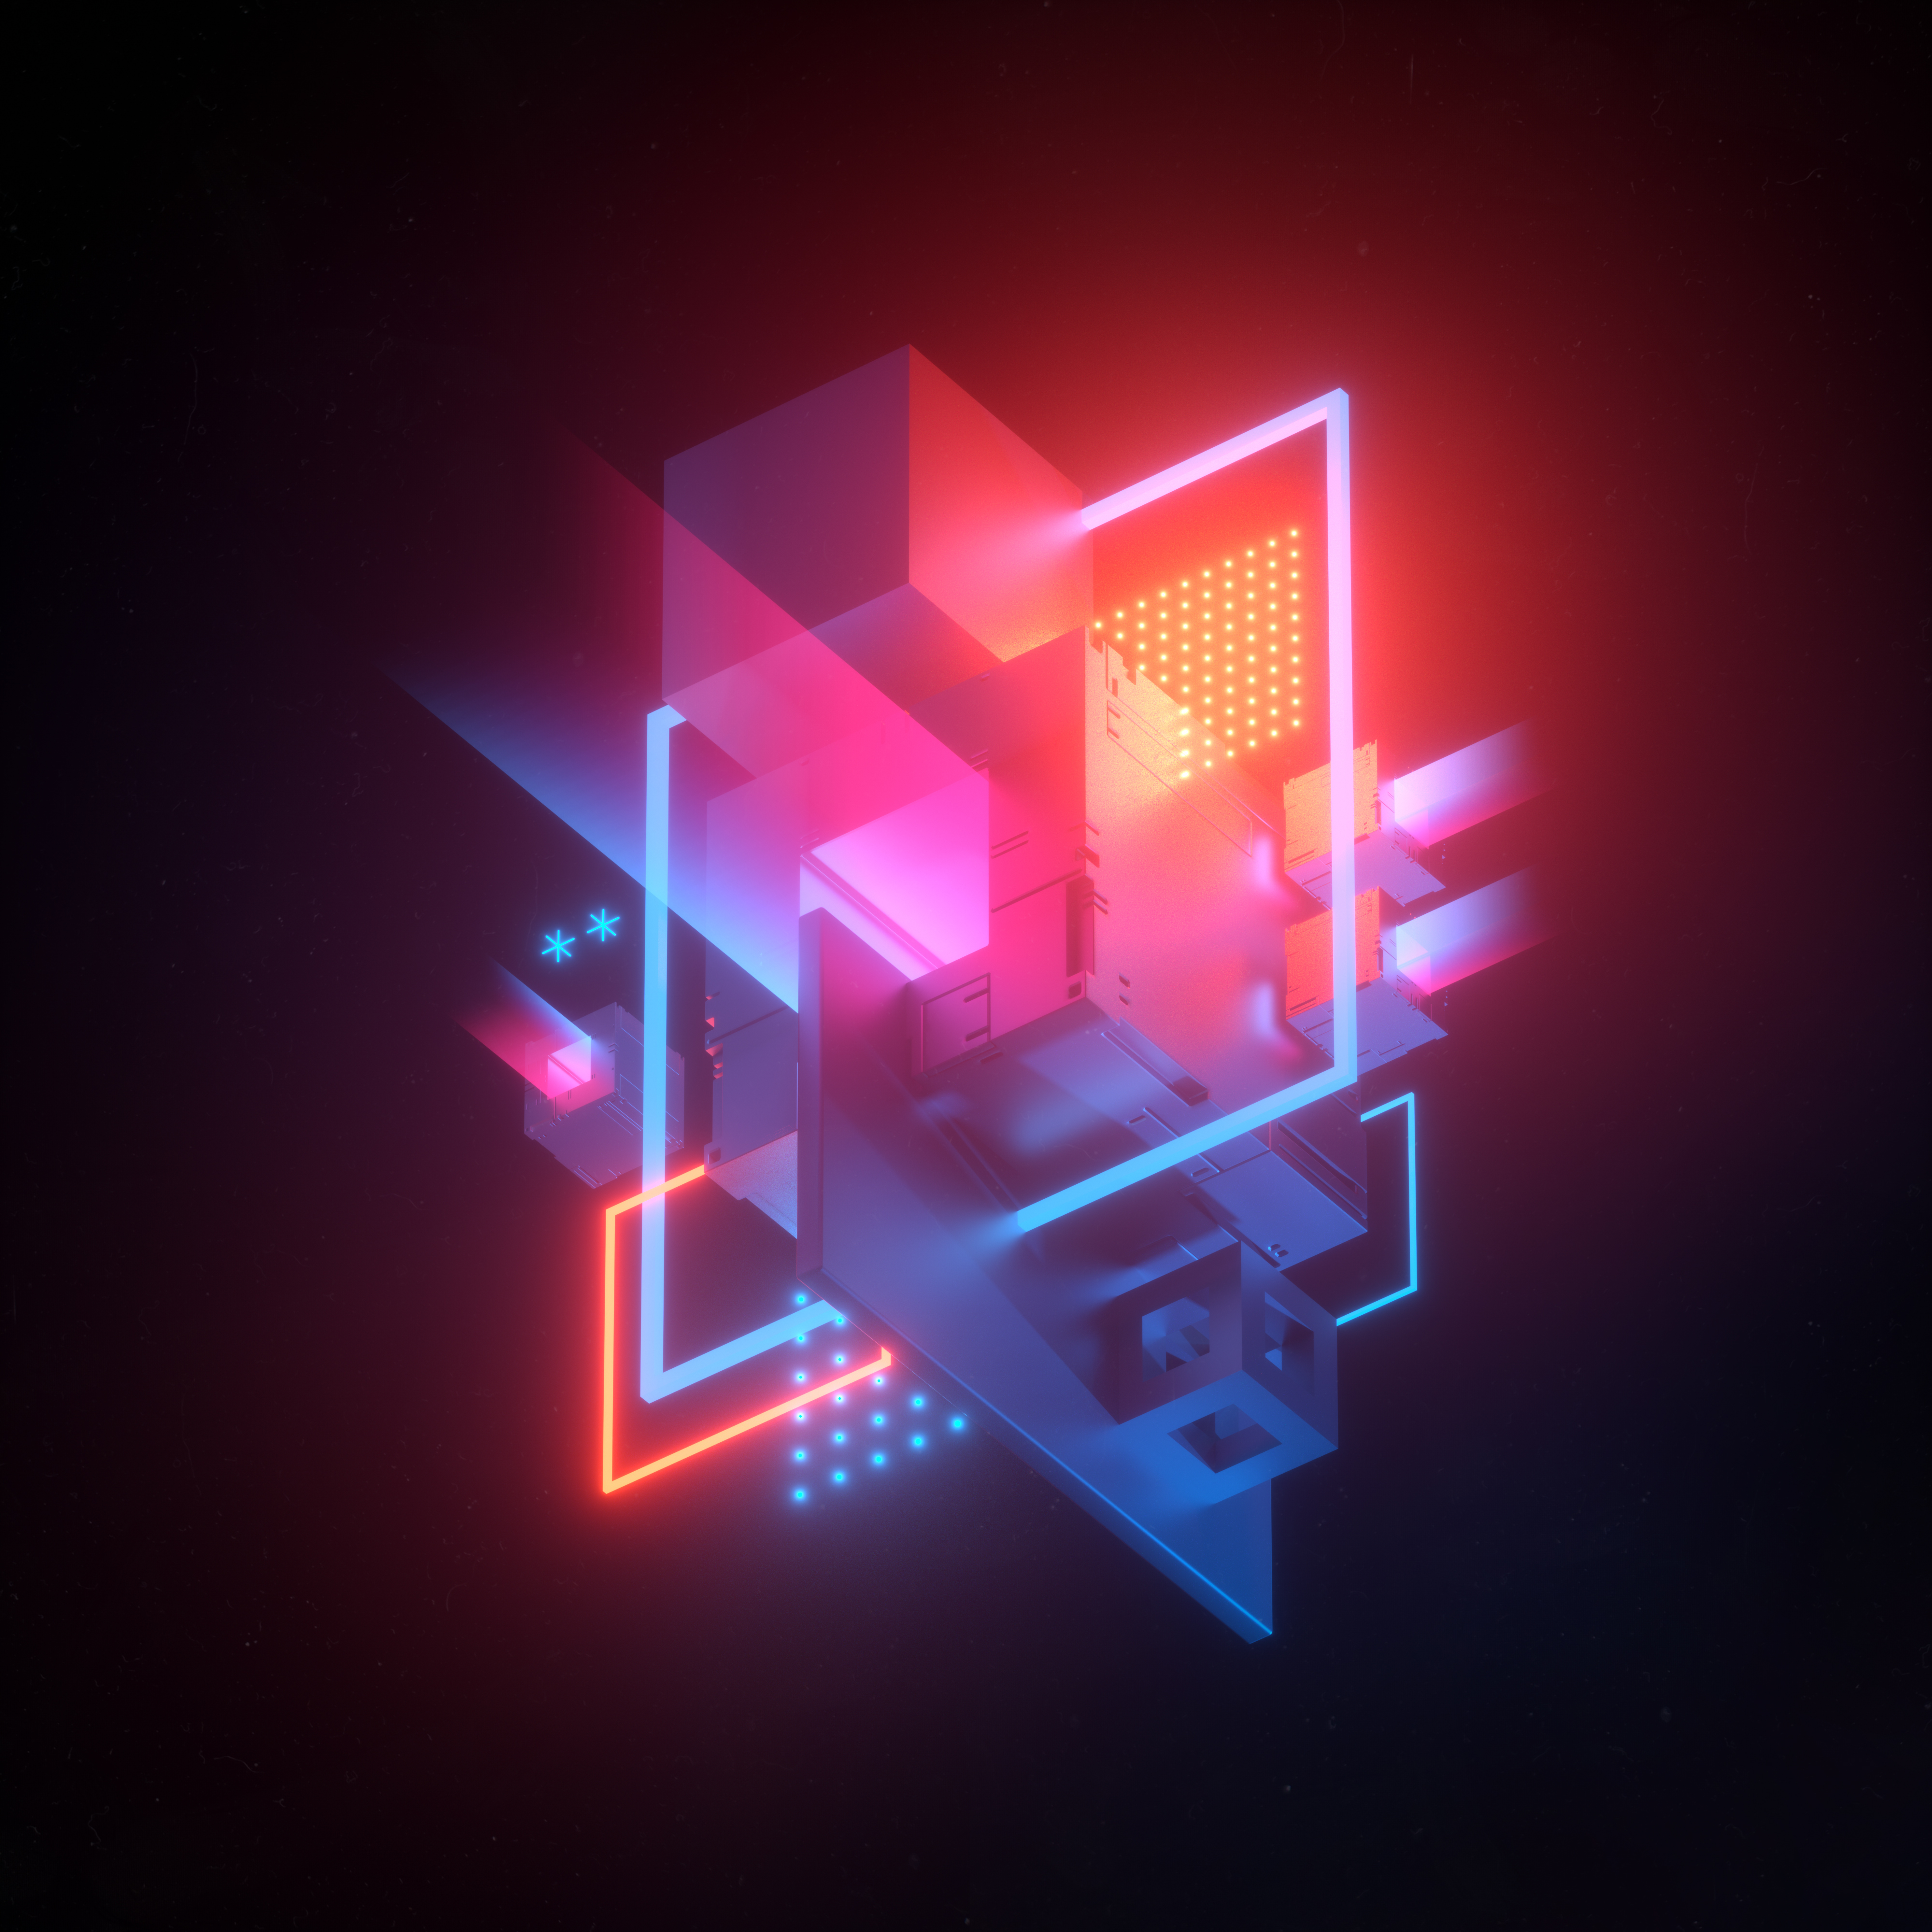 3D cubes Wallpaper 4K, 3D model, Neon, Abstract